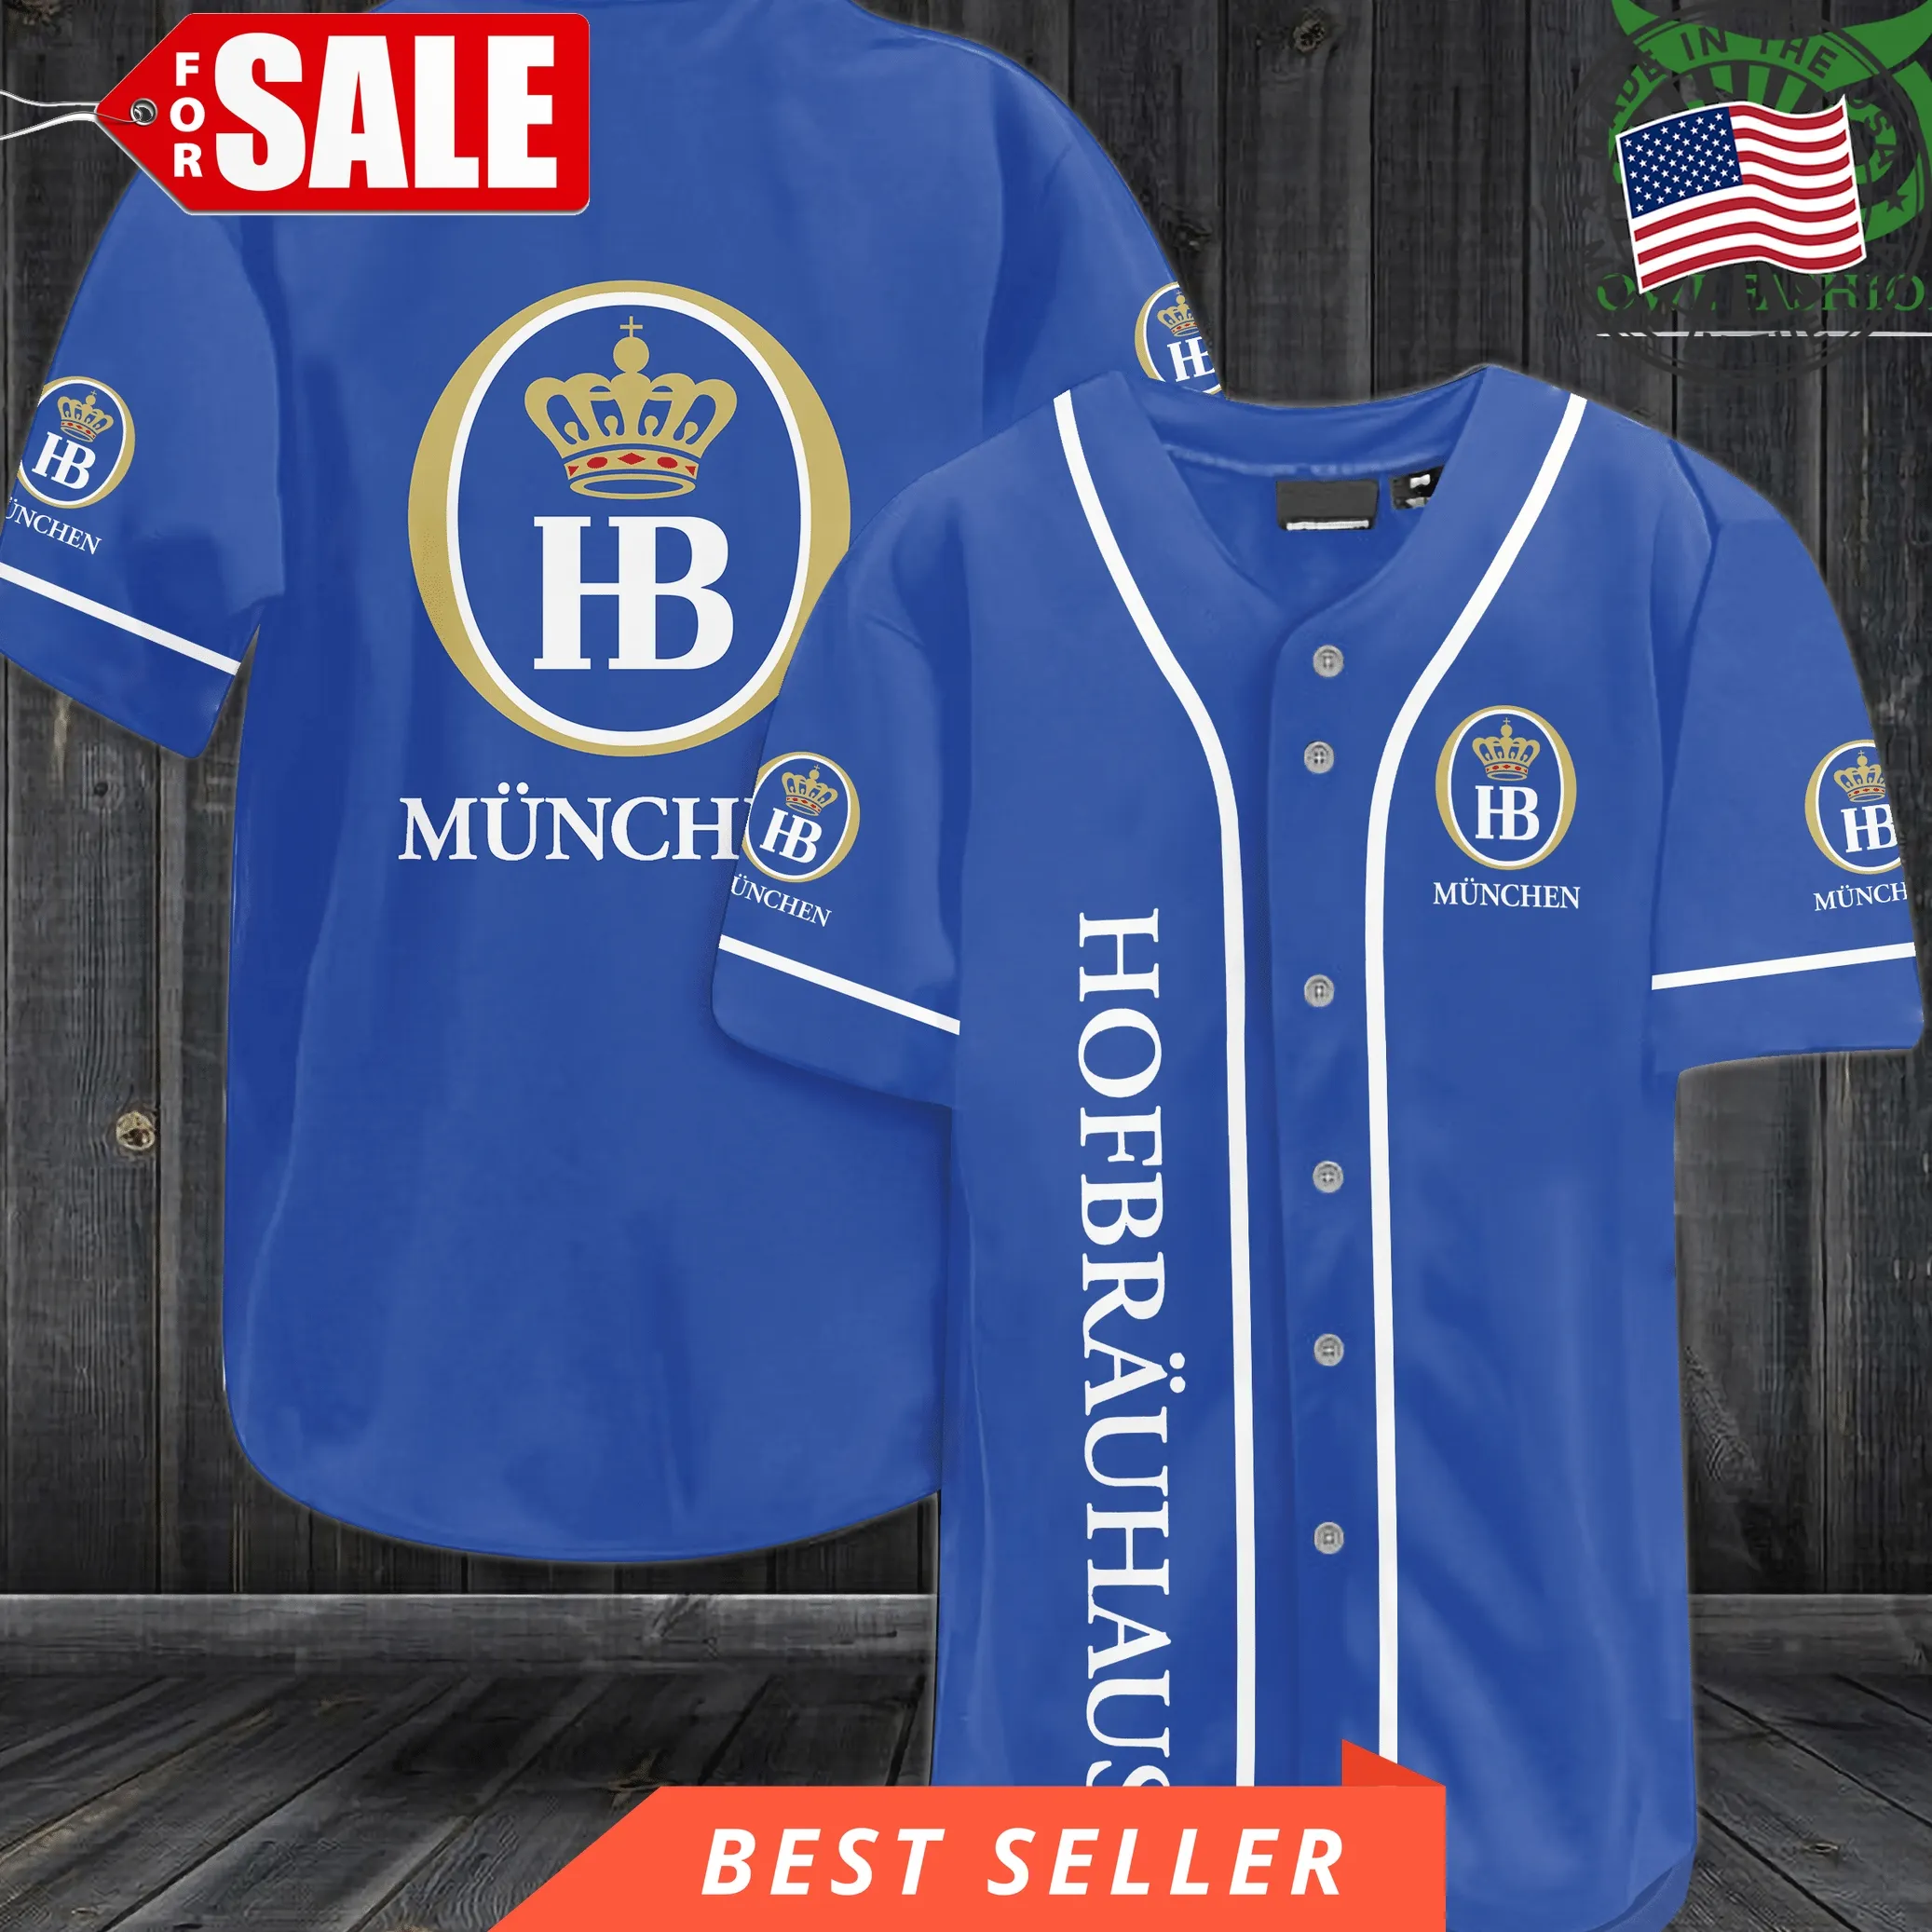 Hofbrauhaus Munchen Baseball Jersey Shirt